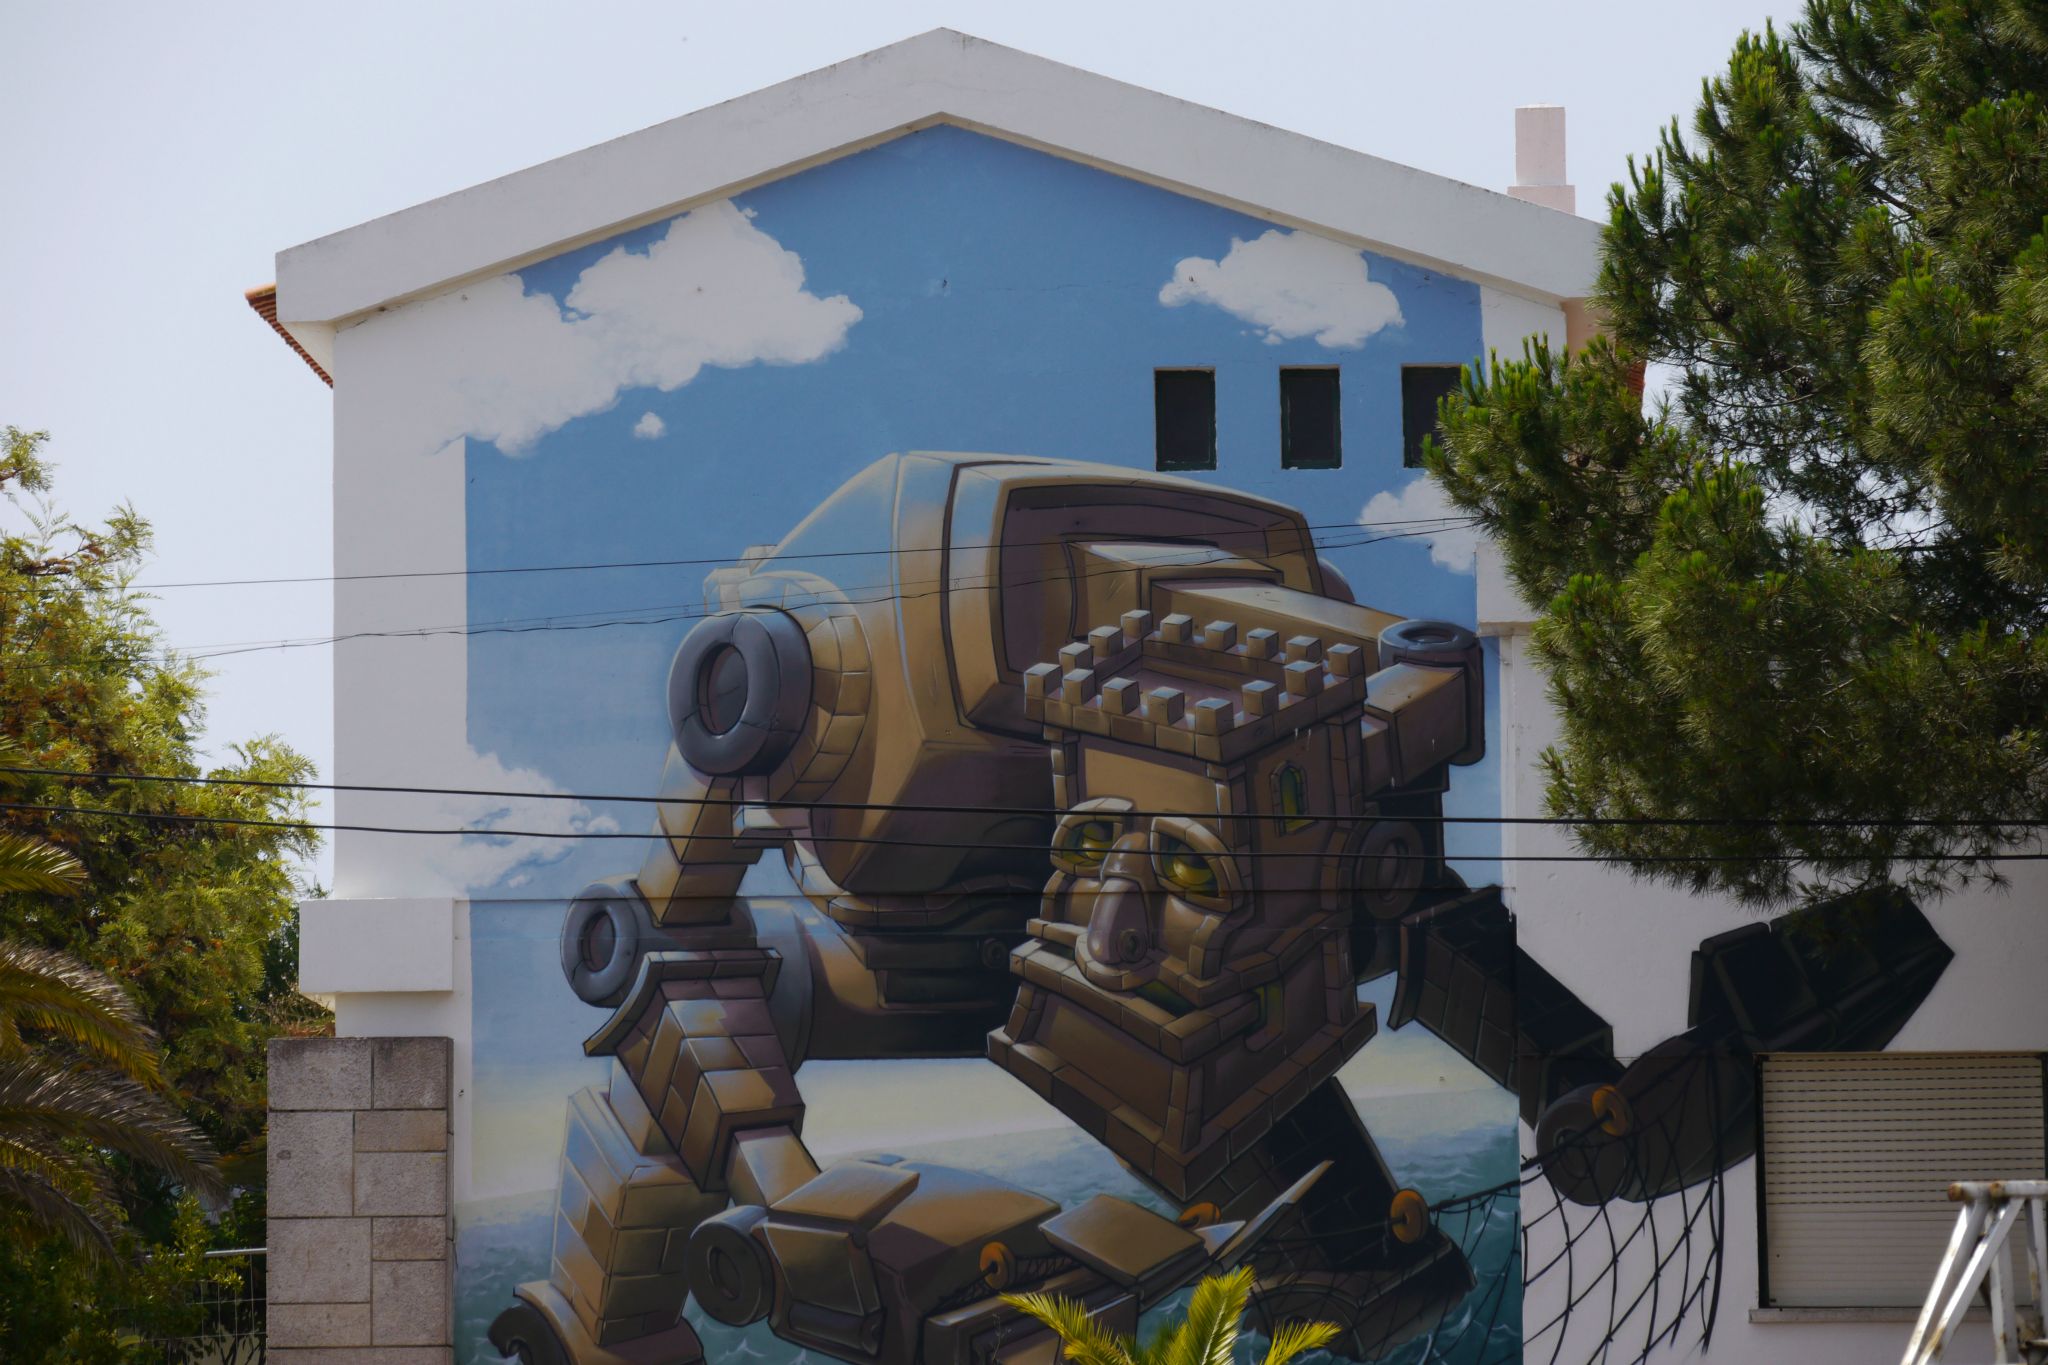 Graffiti Lagos